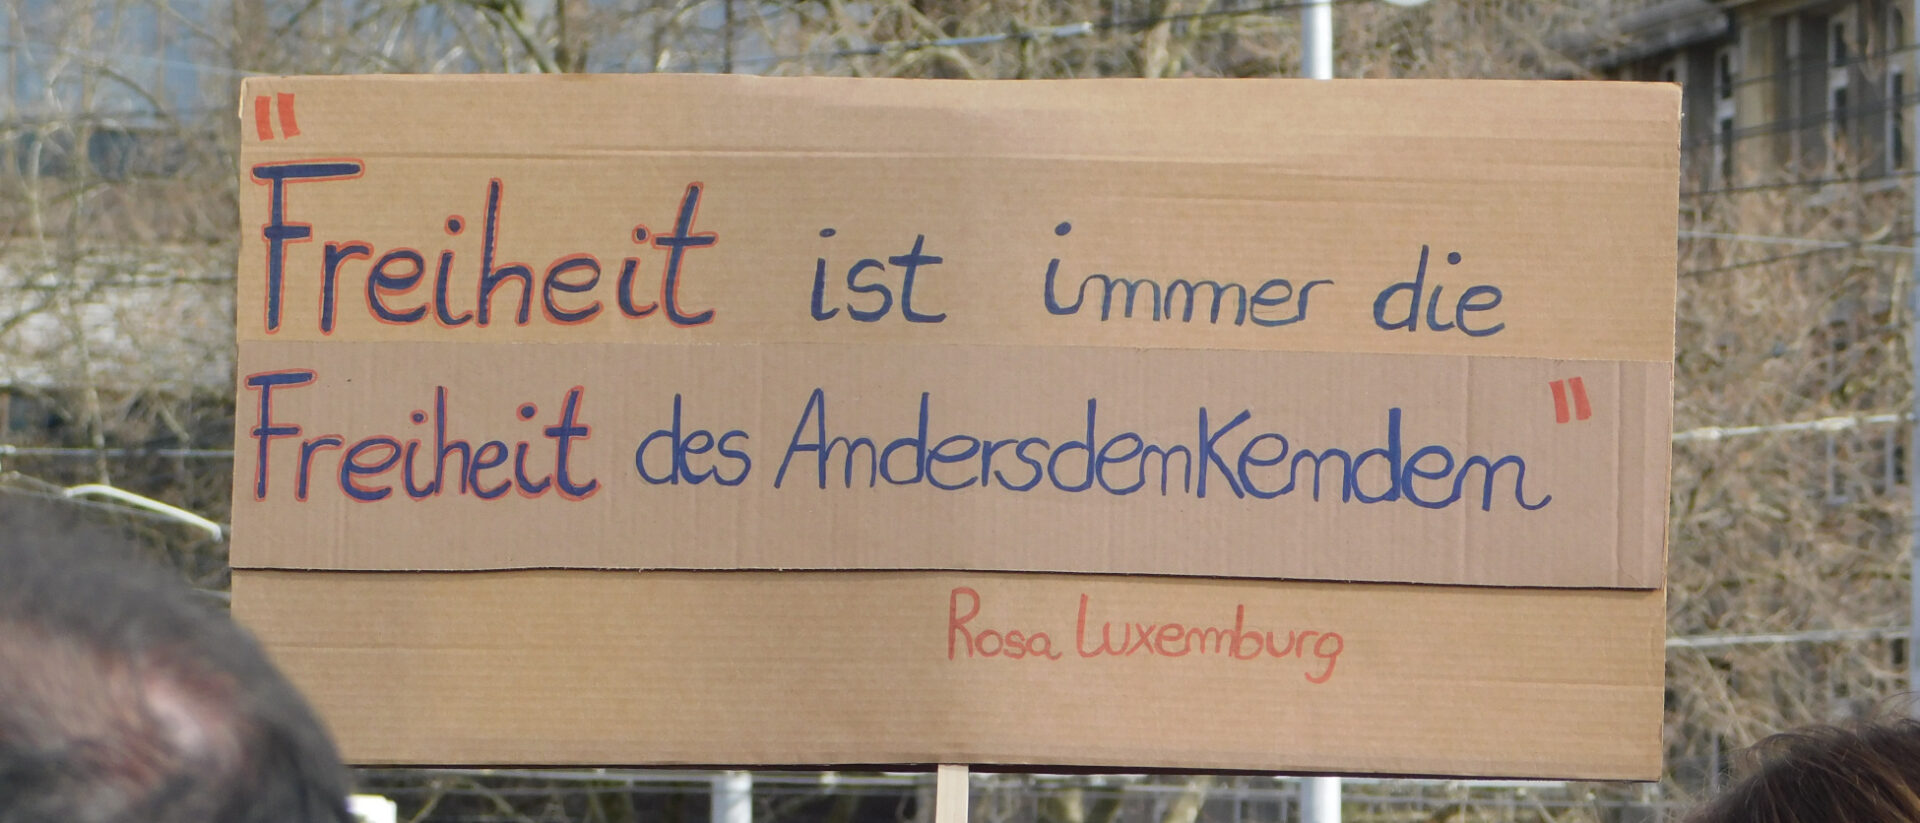 Rosa Luxemburgs berühmter Satz als Kritik an der russischen Revolution.